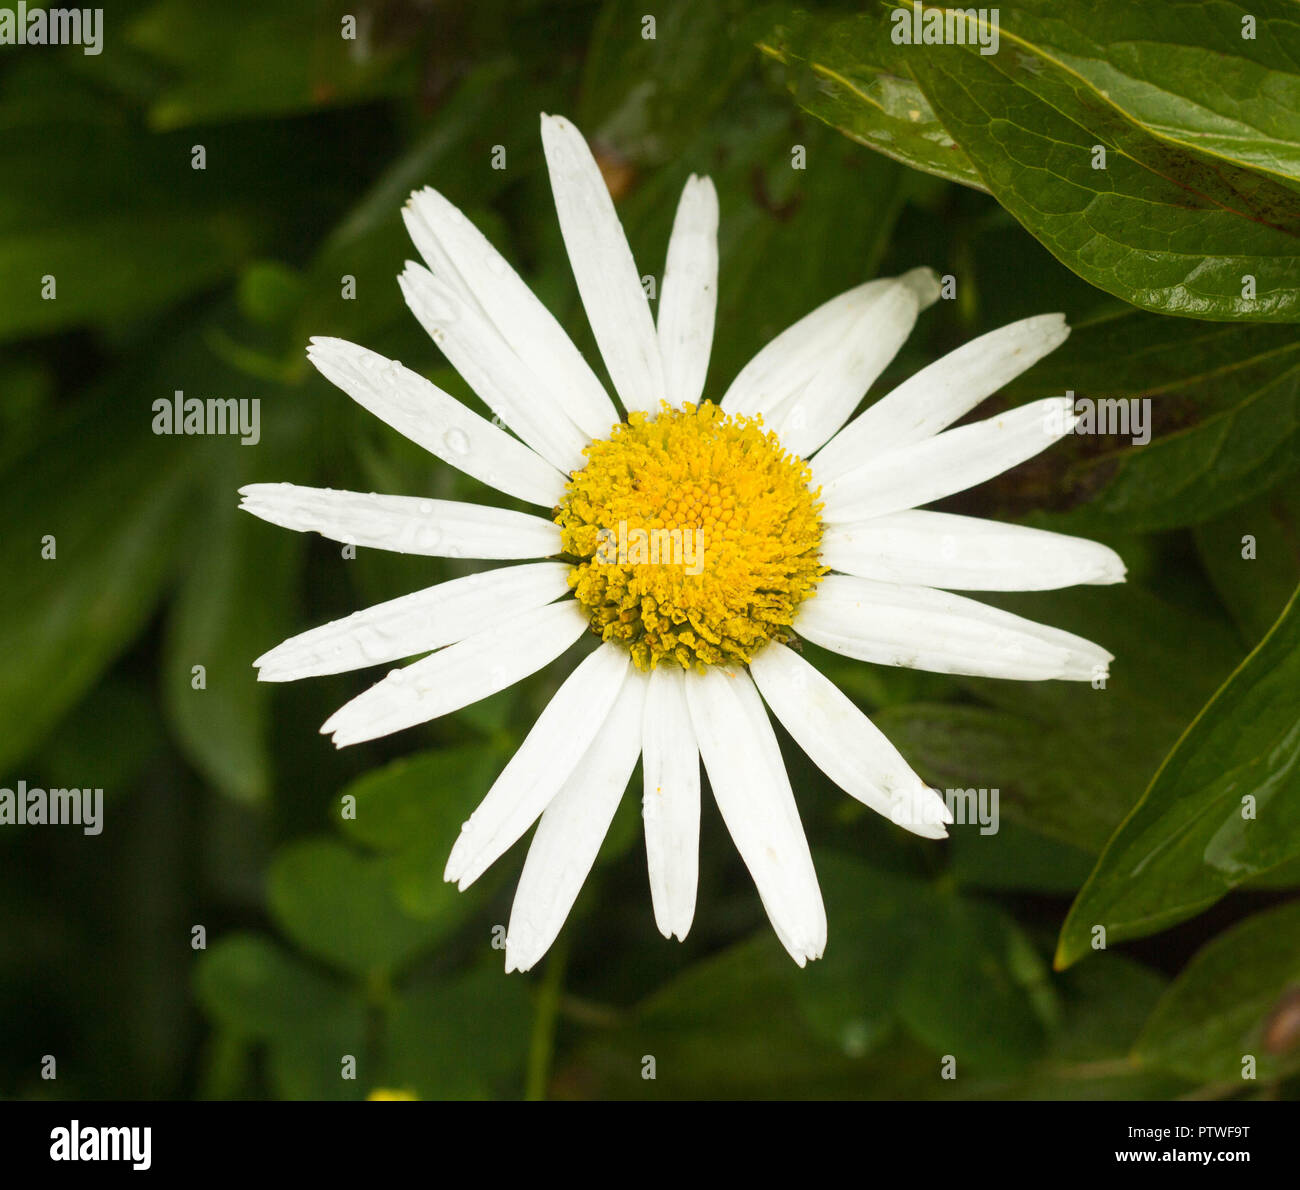 Large chamomile flower, close-up Stock Photo